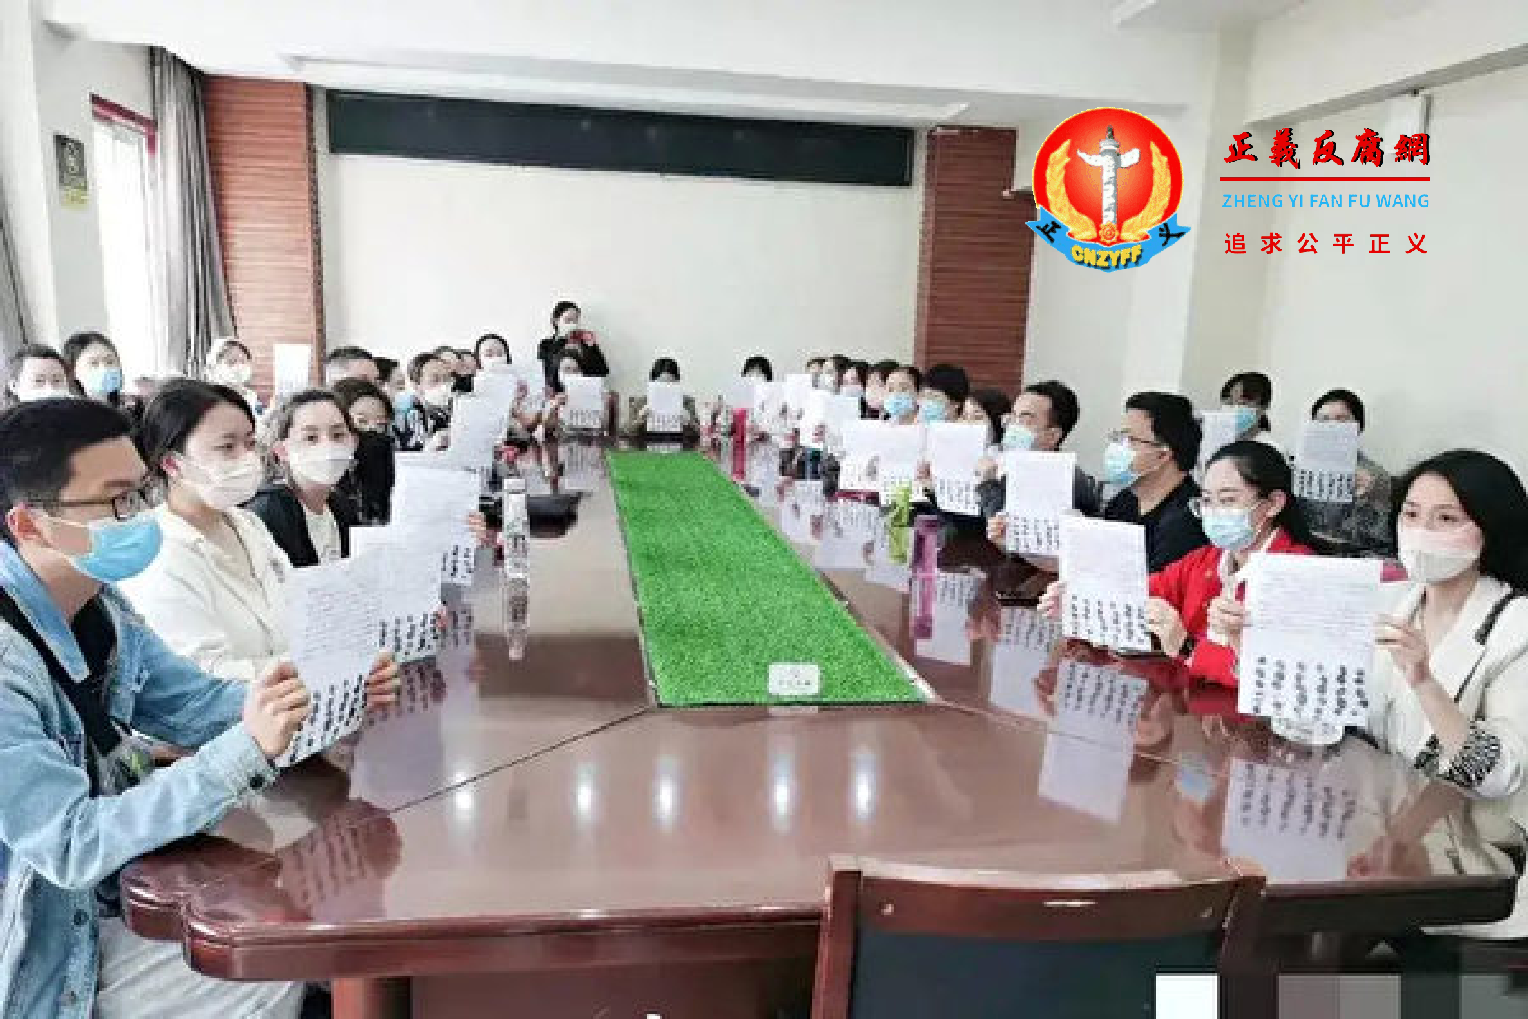 传河南三门峡市34名教师在教育局集体举白纸绝食抗议，引发网民评论如潮